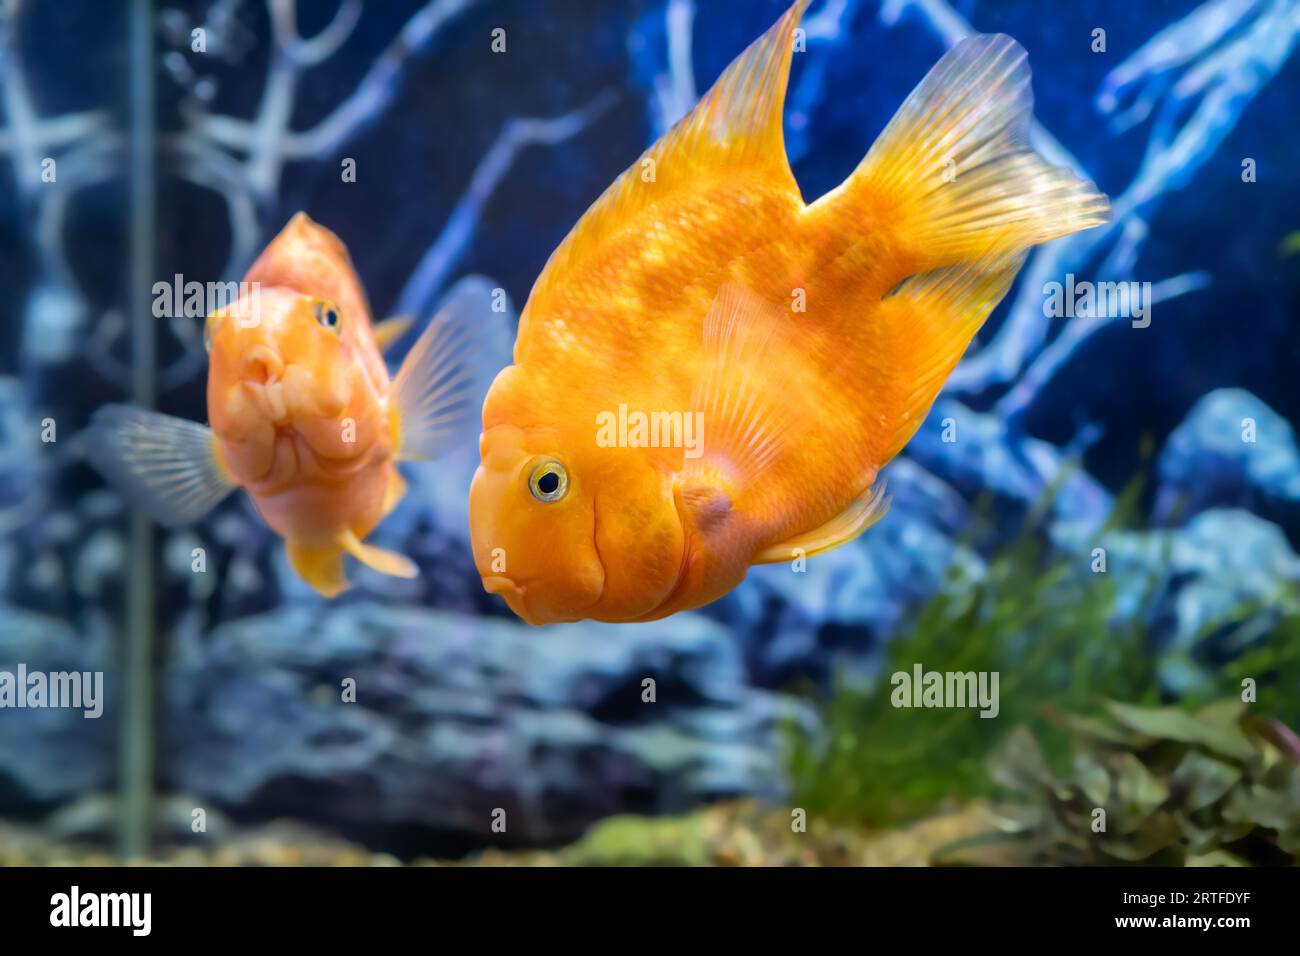 Orange parrot fish in the aquarium. Red Parrot Cichlid. Aquarium fish Stock Photo